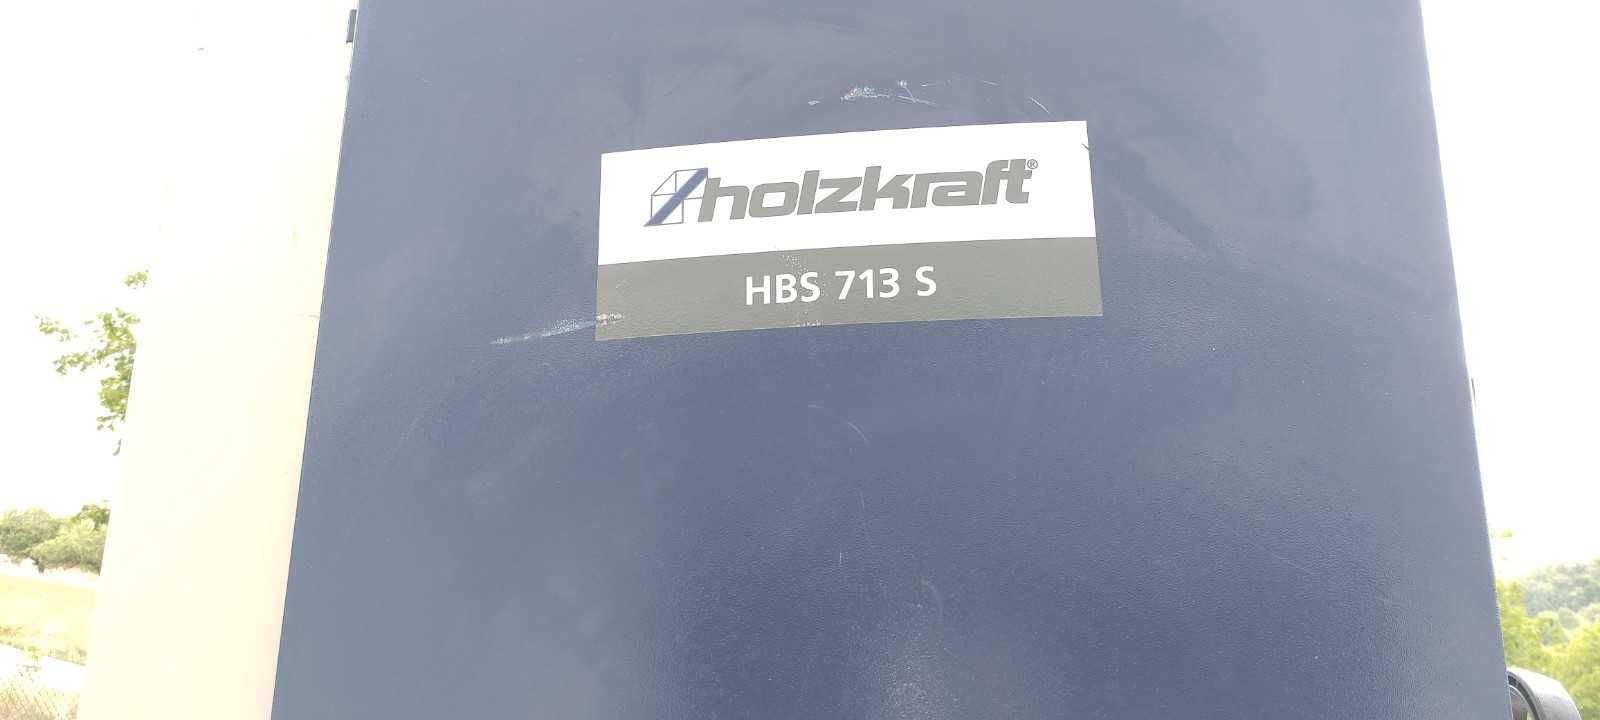 piła taśmowa HOLZKRAFT HBS 713 S